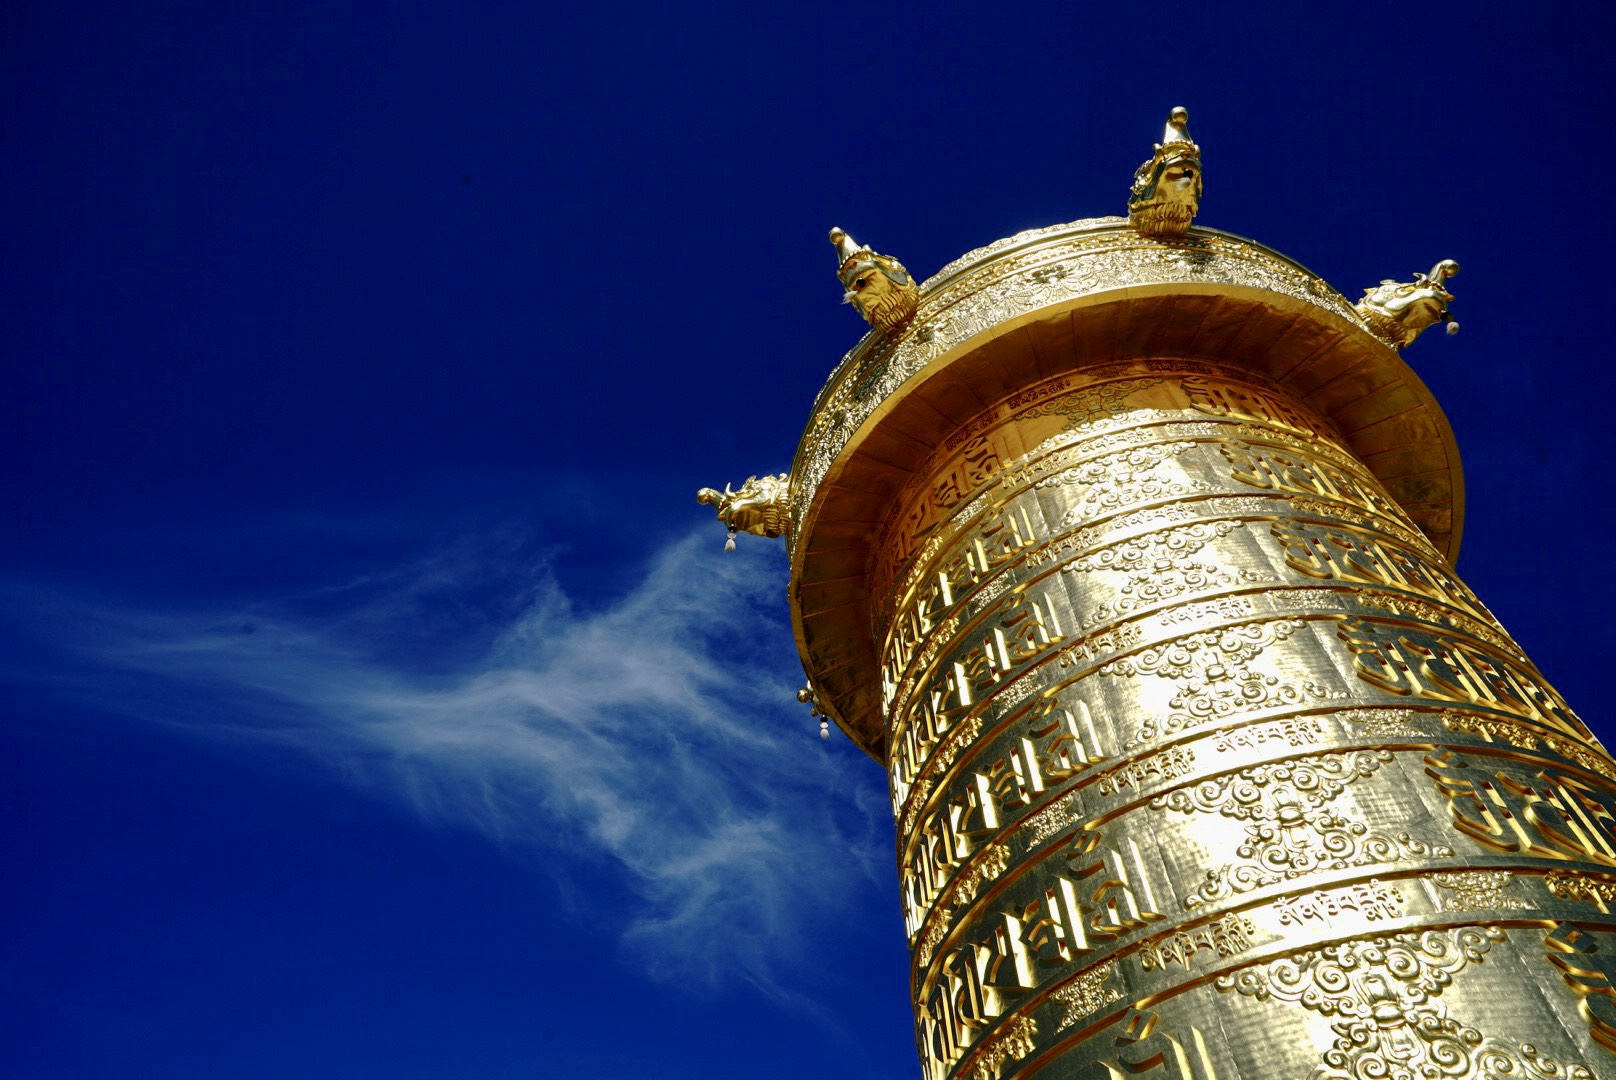 Hàng ngàn người dân đến tham quan Đại bảo tháp kinh luân nặng 200 tấn, dát vàng 24k - Ảnh 5.